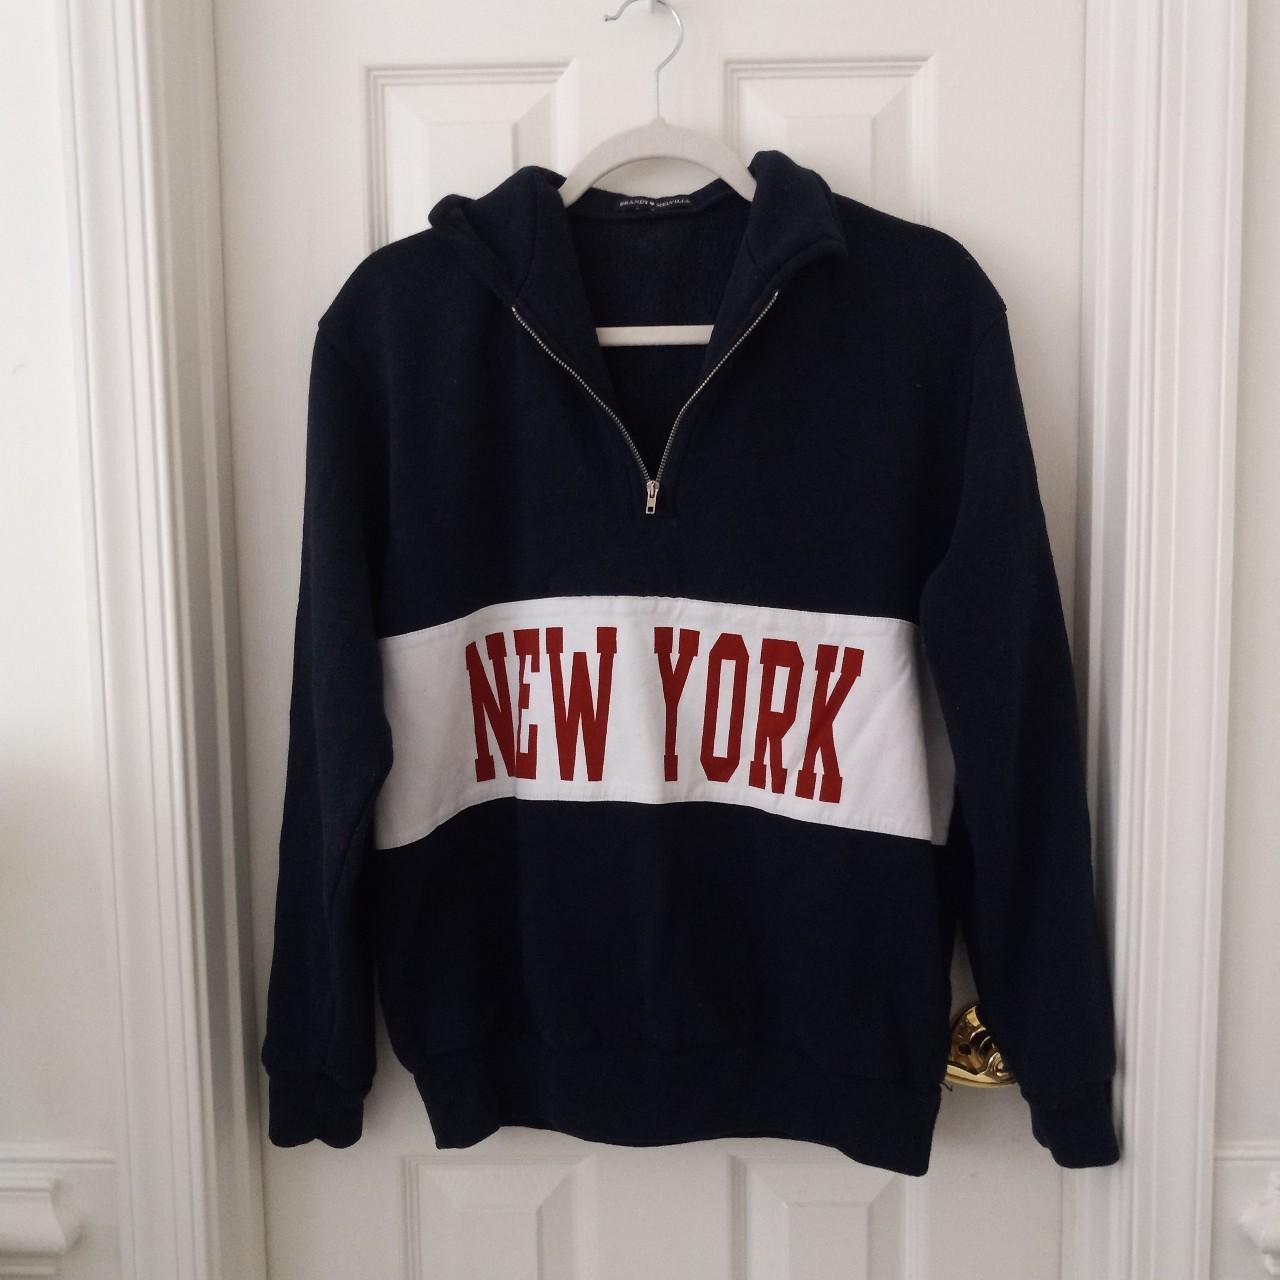 Brandy melville new york quarter zip sweatshirt - Depop